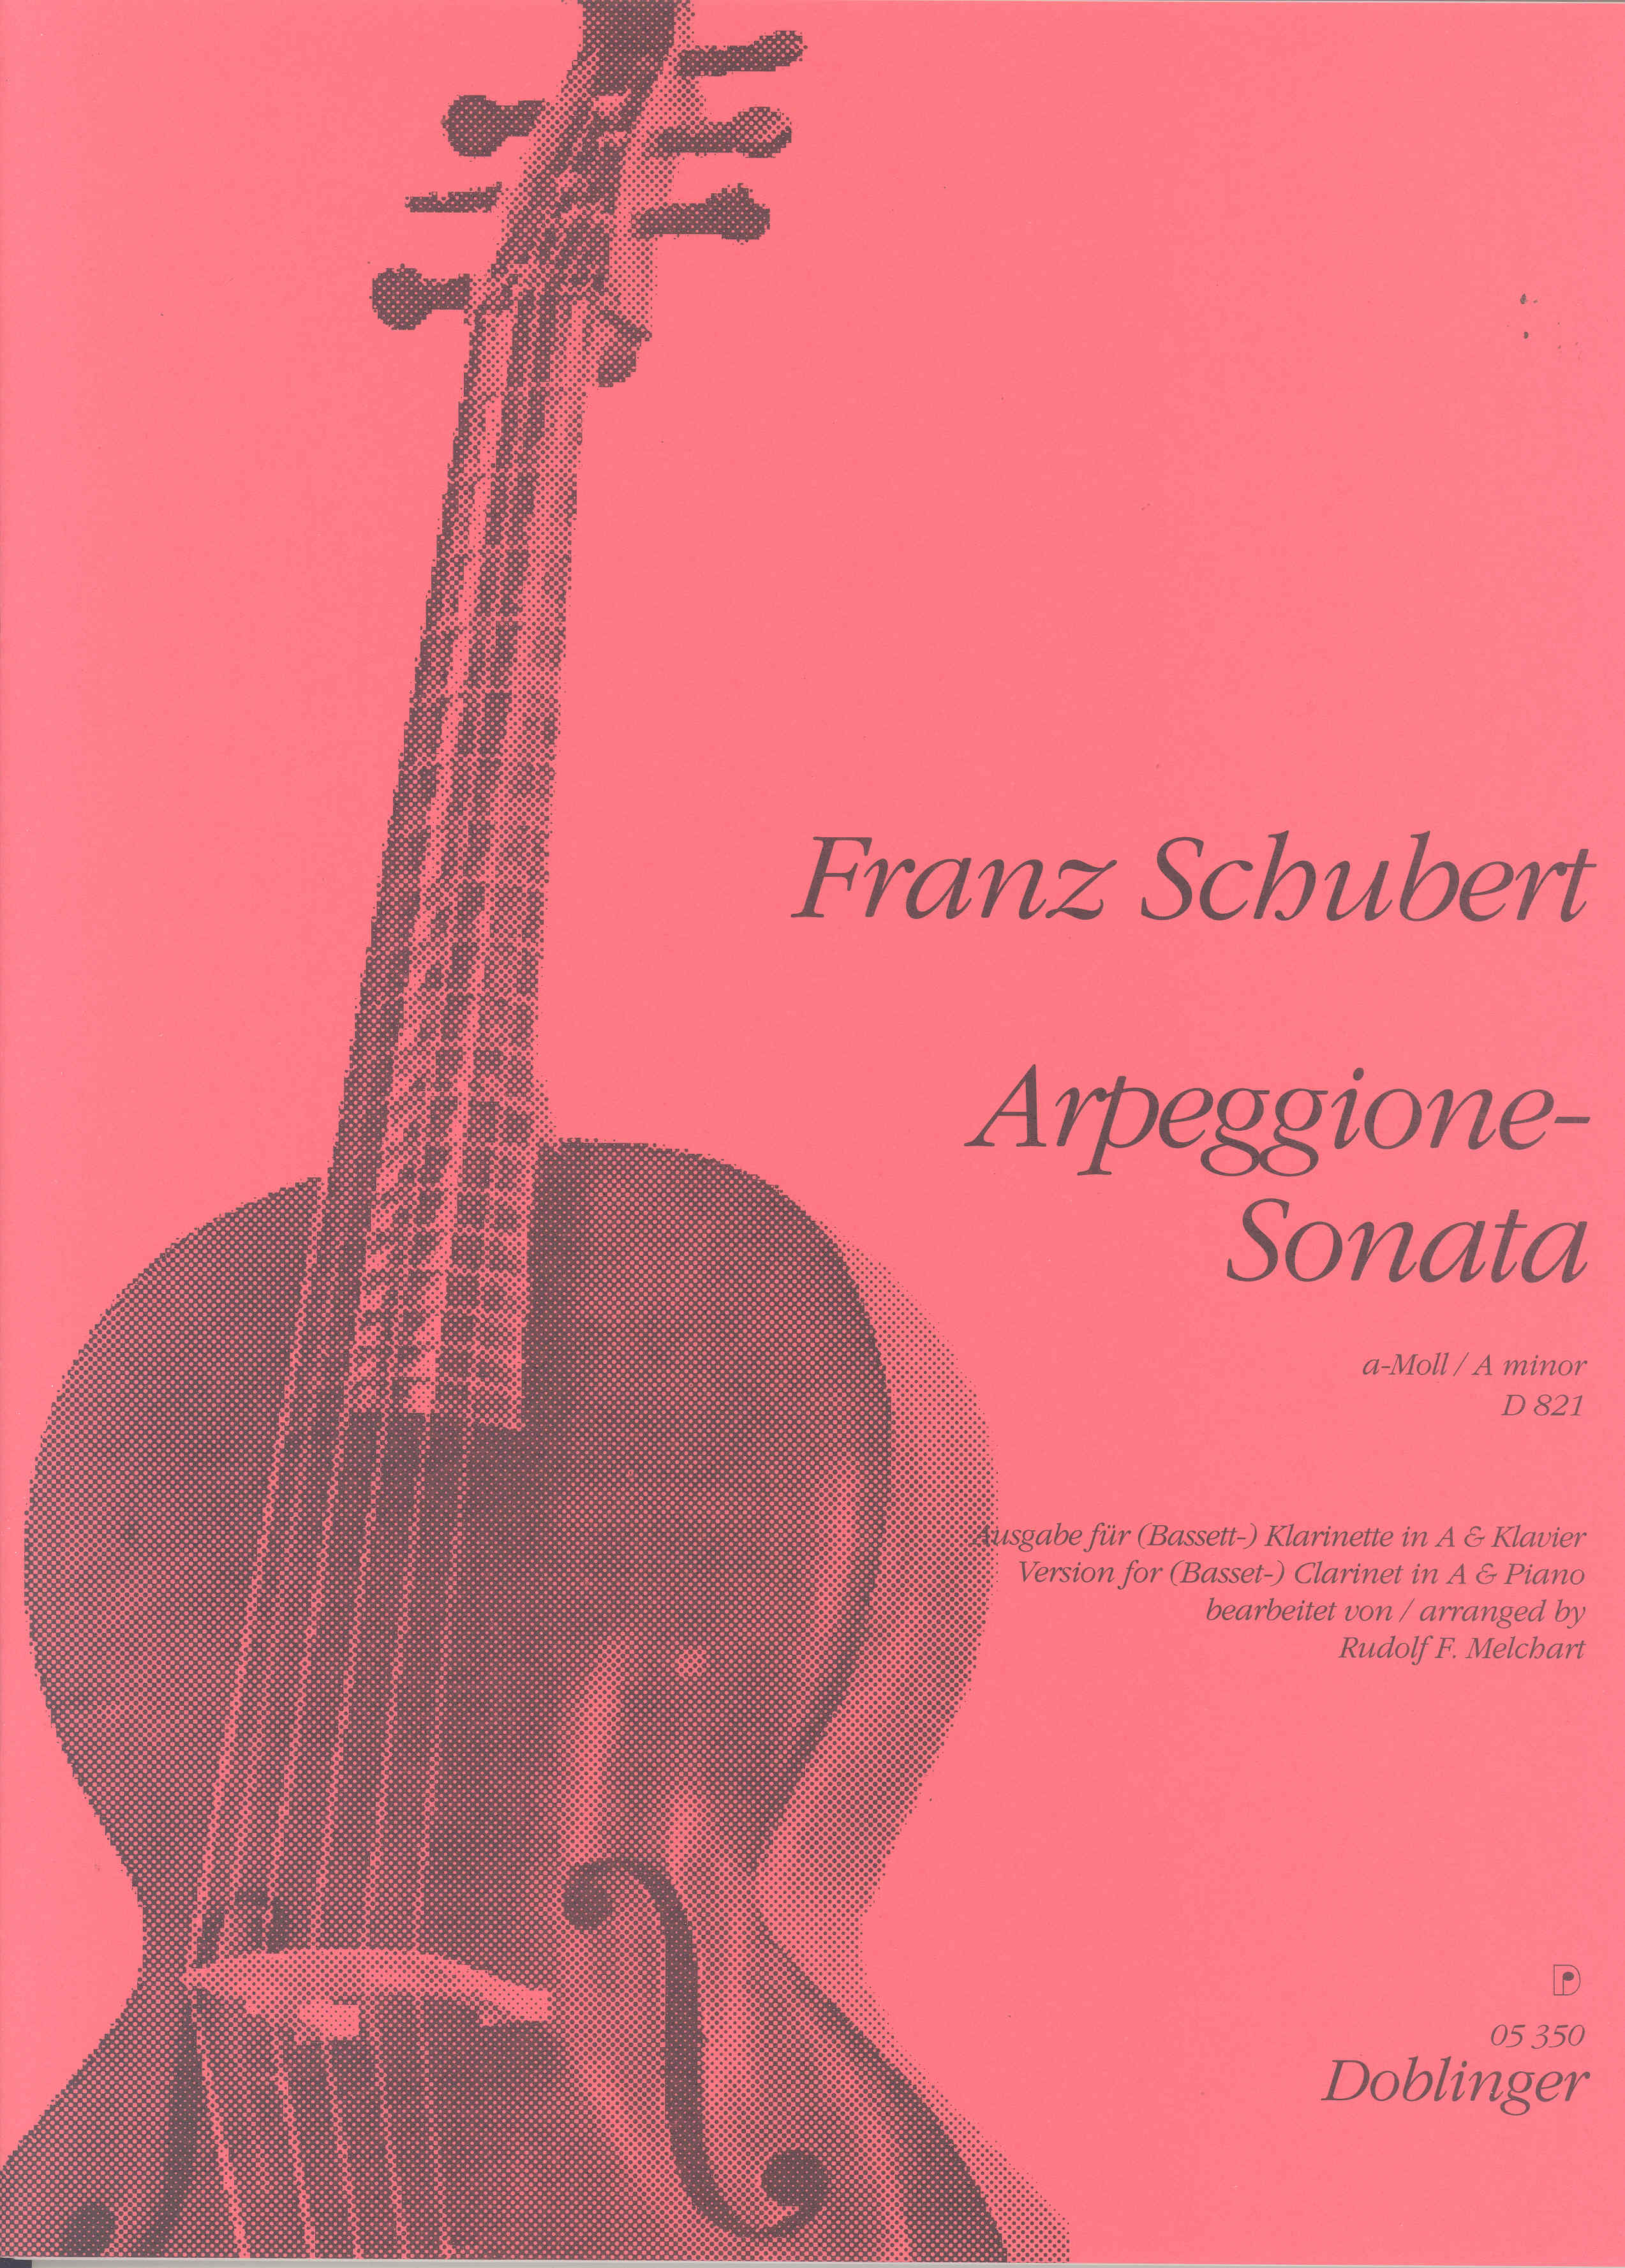 Schubert Arpeggione-sonate D 821 Clarinet & Piano Sheet Music Songbook